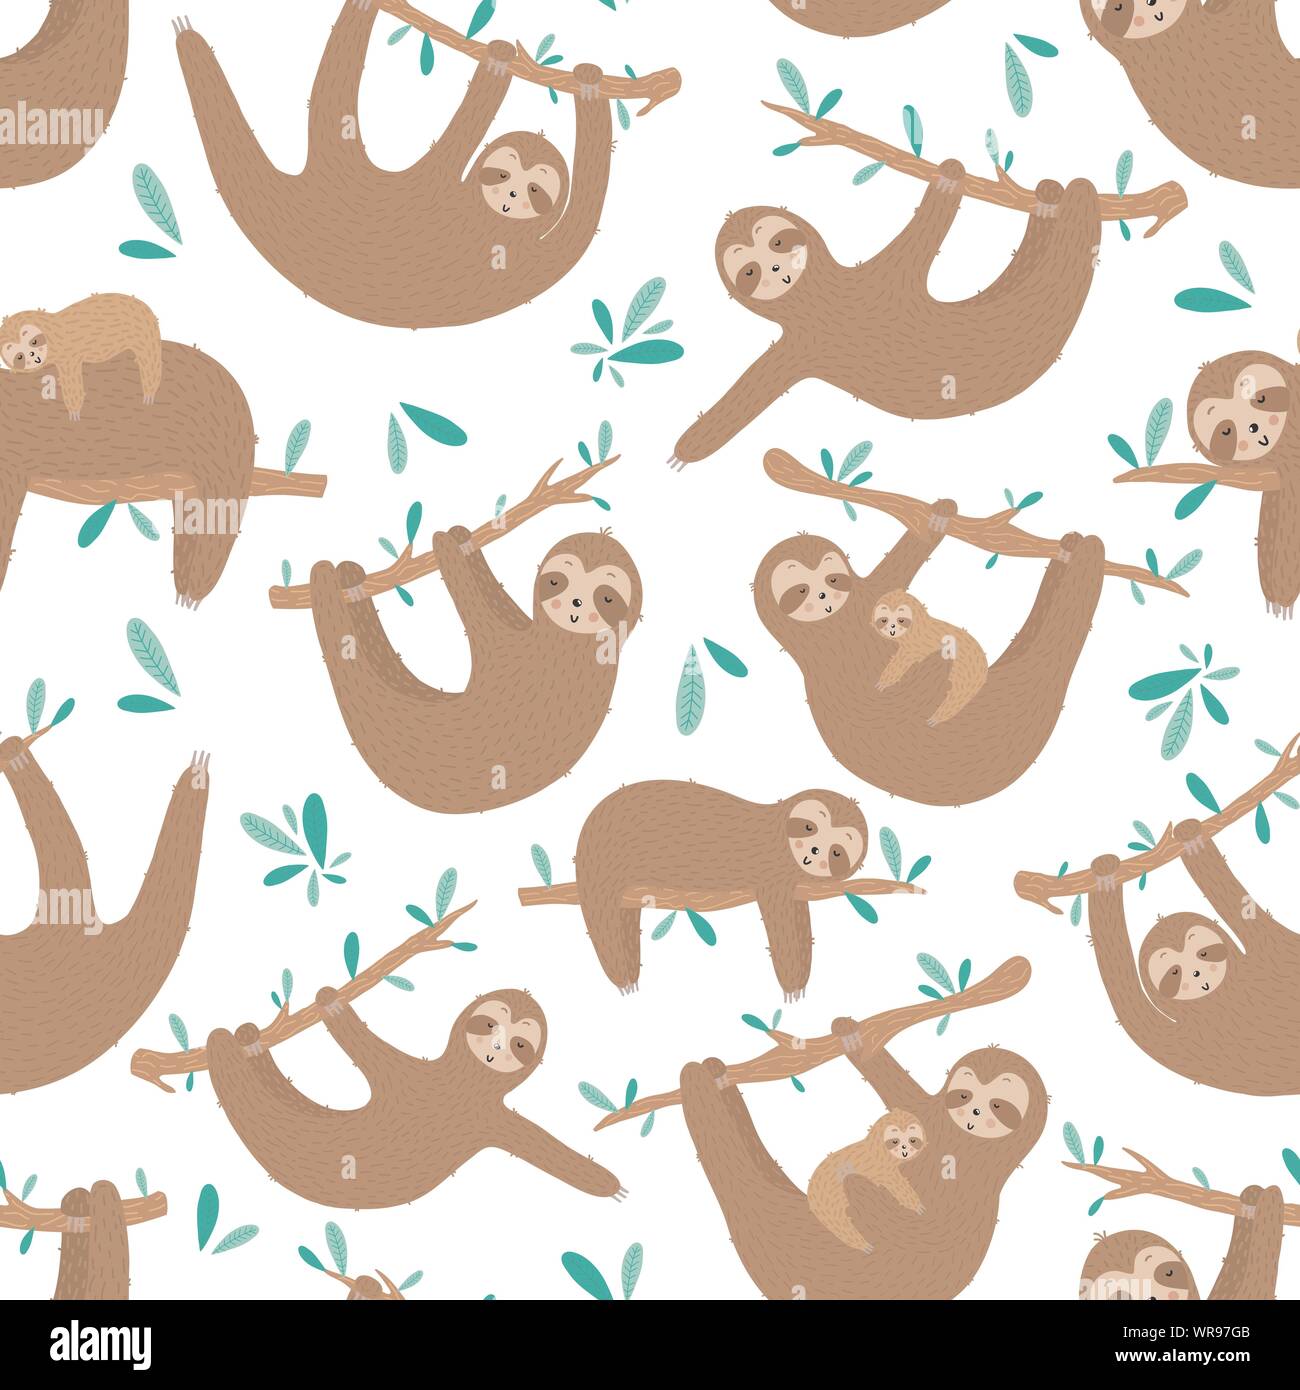 Hình nền Sloth xinh đẹp - Bạn thích màu xanh lá cây mát mẻ và Sloth dễ thương? Hãy xem những hình ảnh của chúng tôi với background xanh là sự kết hợp savrastic đẹp mắt giữa hai yếu tố này.